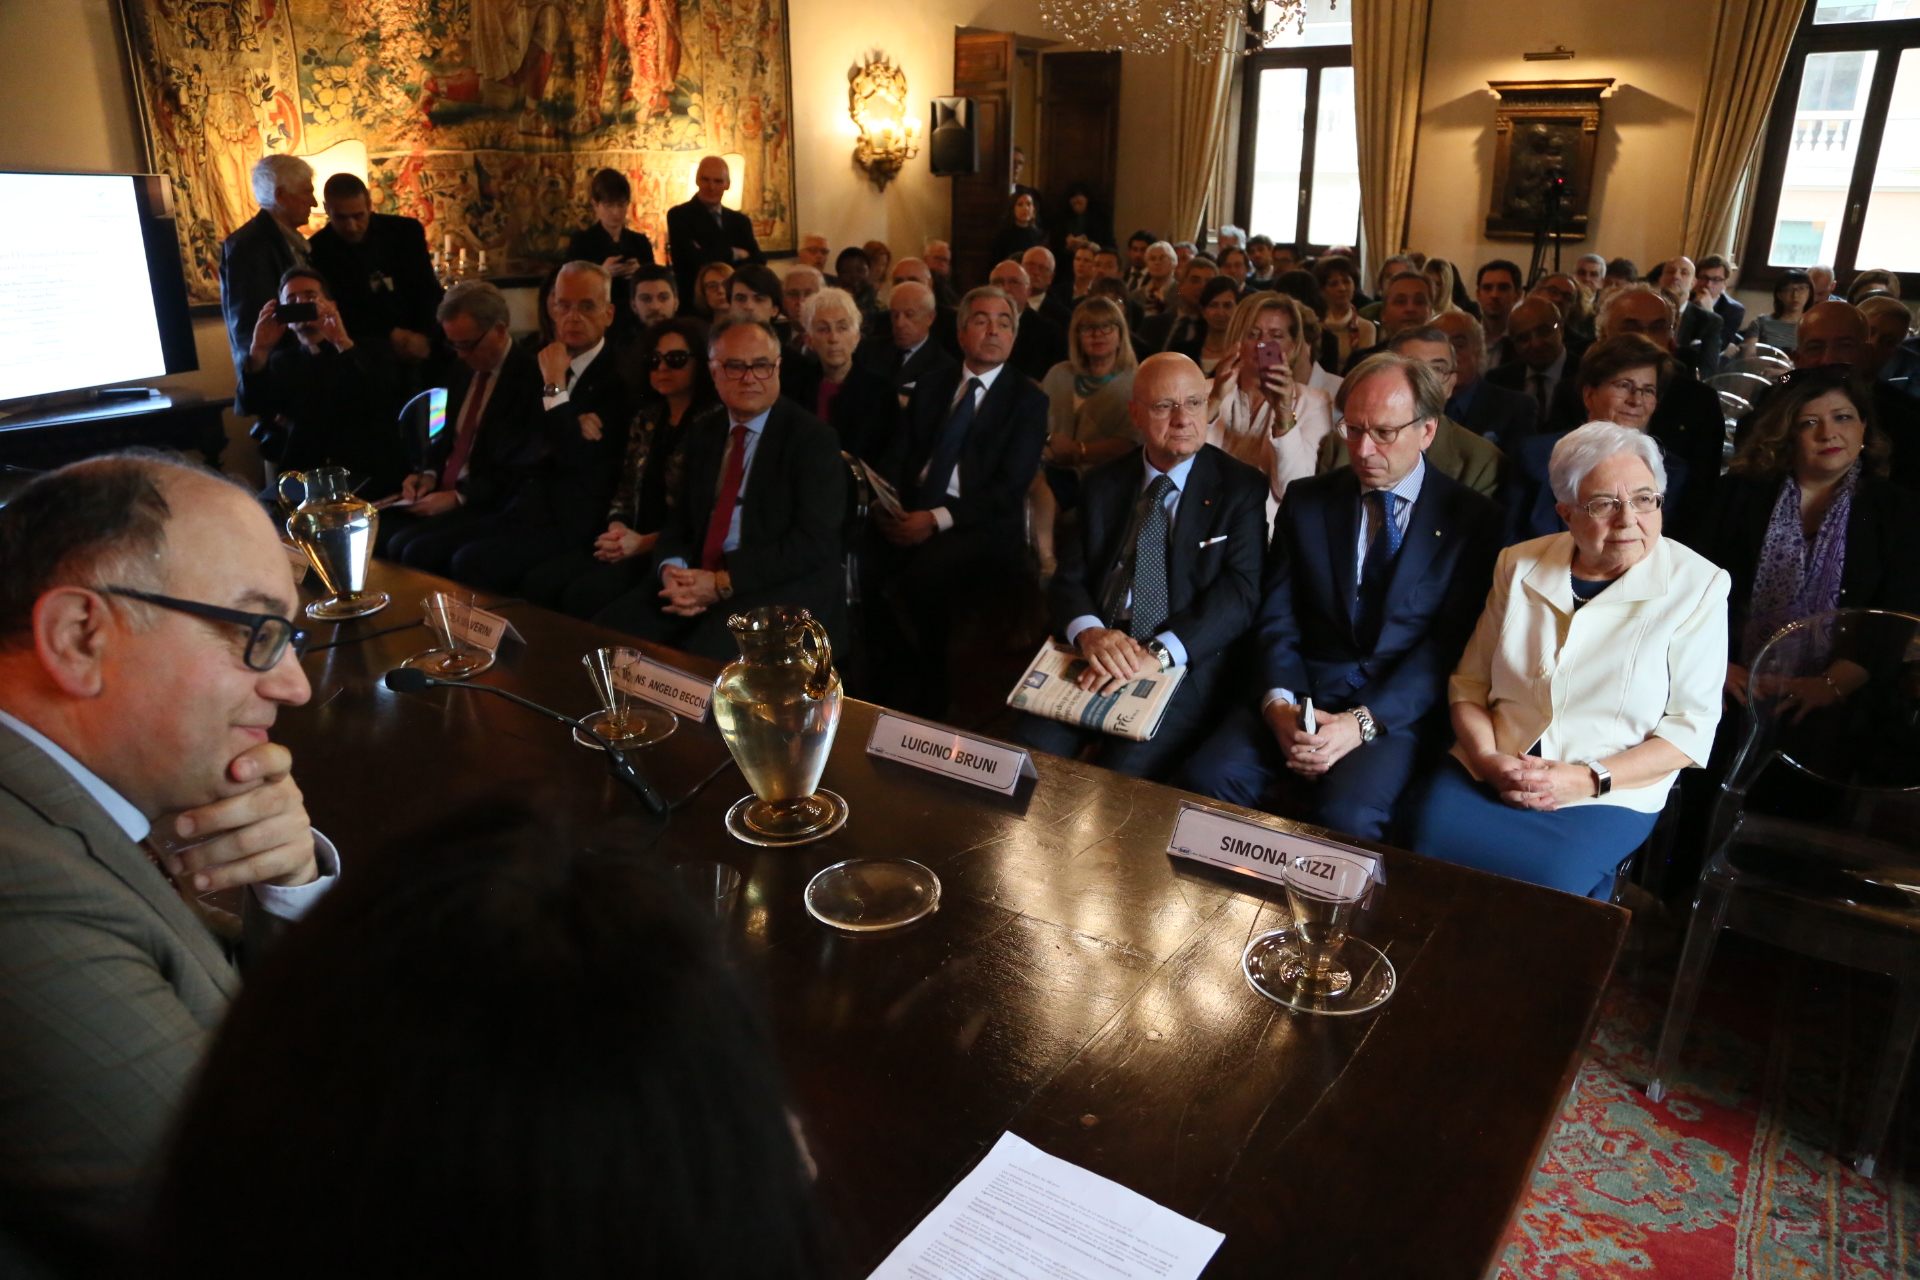 Convegno “Chiara Lubich e l’economia di comunione: il percorso di una profezia” all’Ambasciata d’Italia presso la Santa Sede e il Sovrano Militare Ordine di Malta